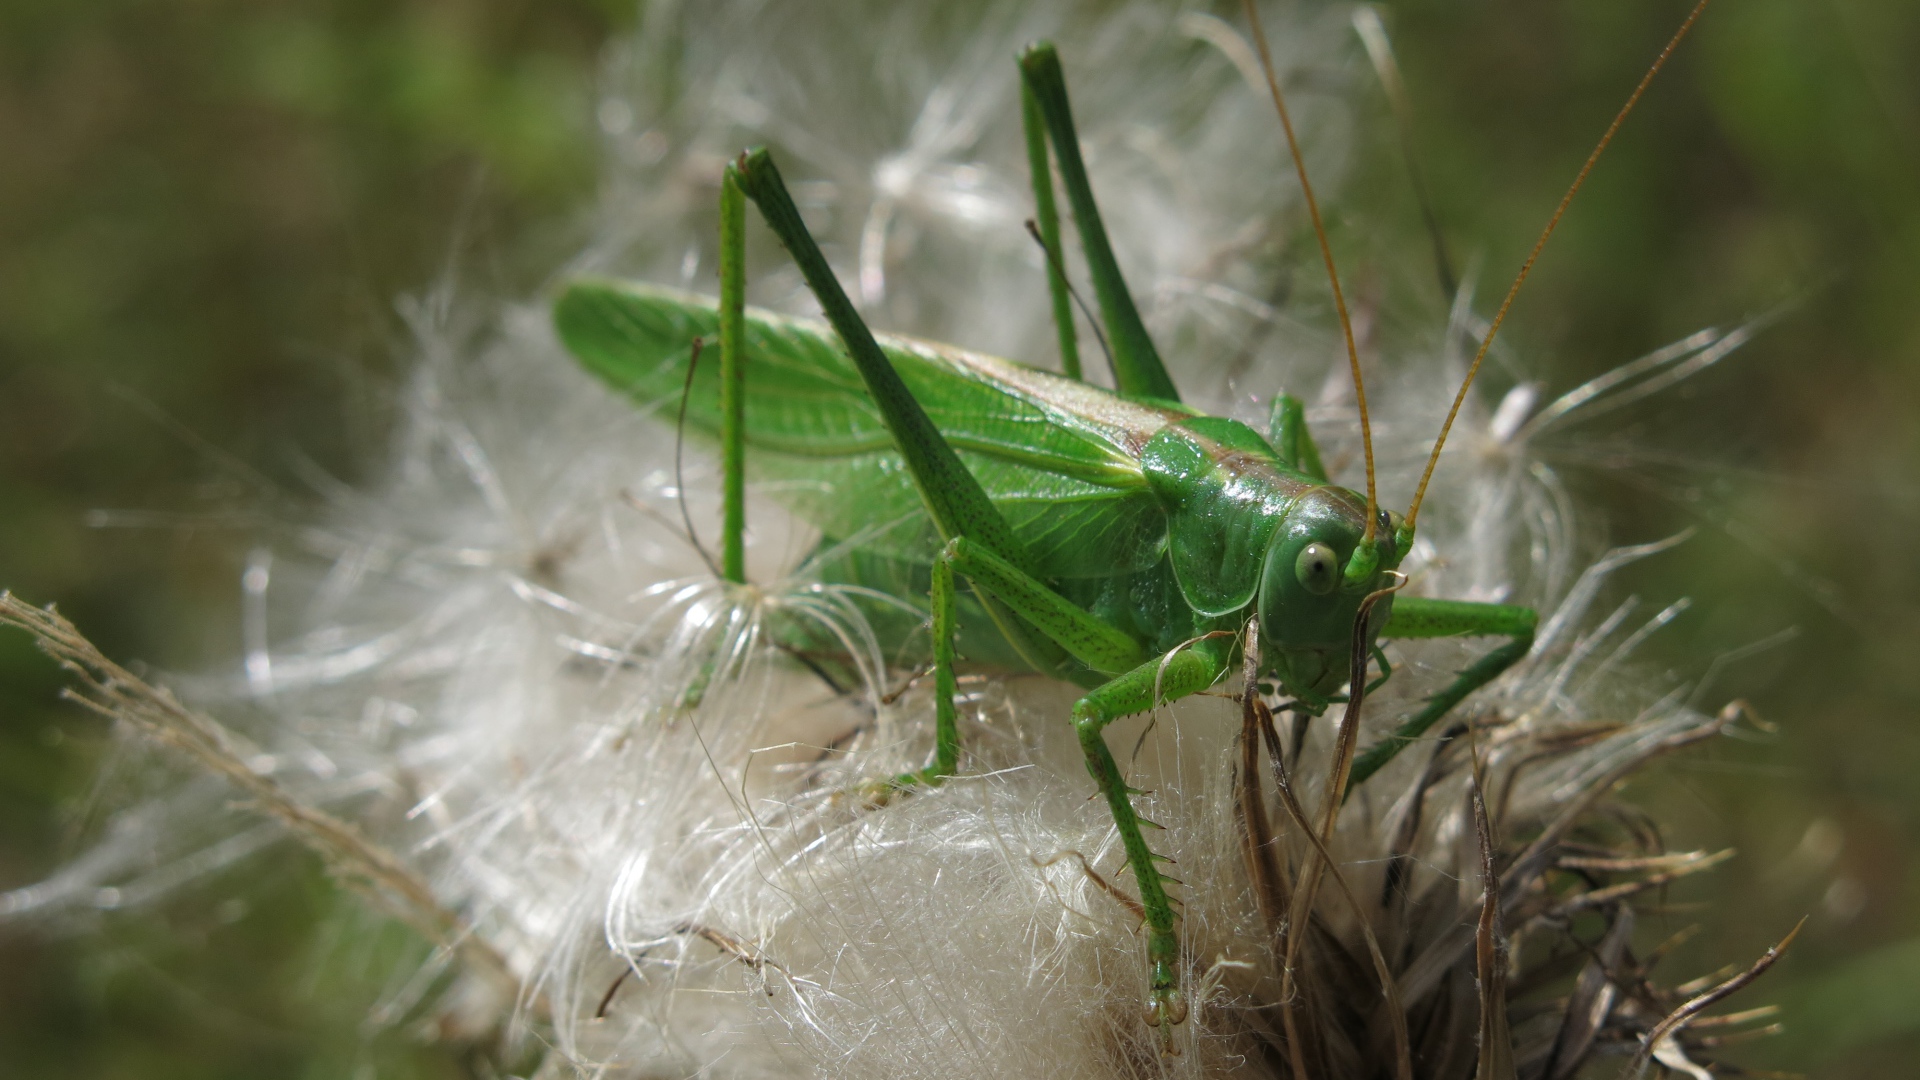 Big green grasshopper sitting on a flower